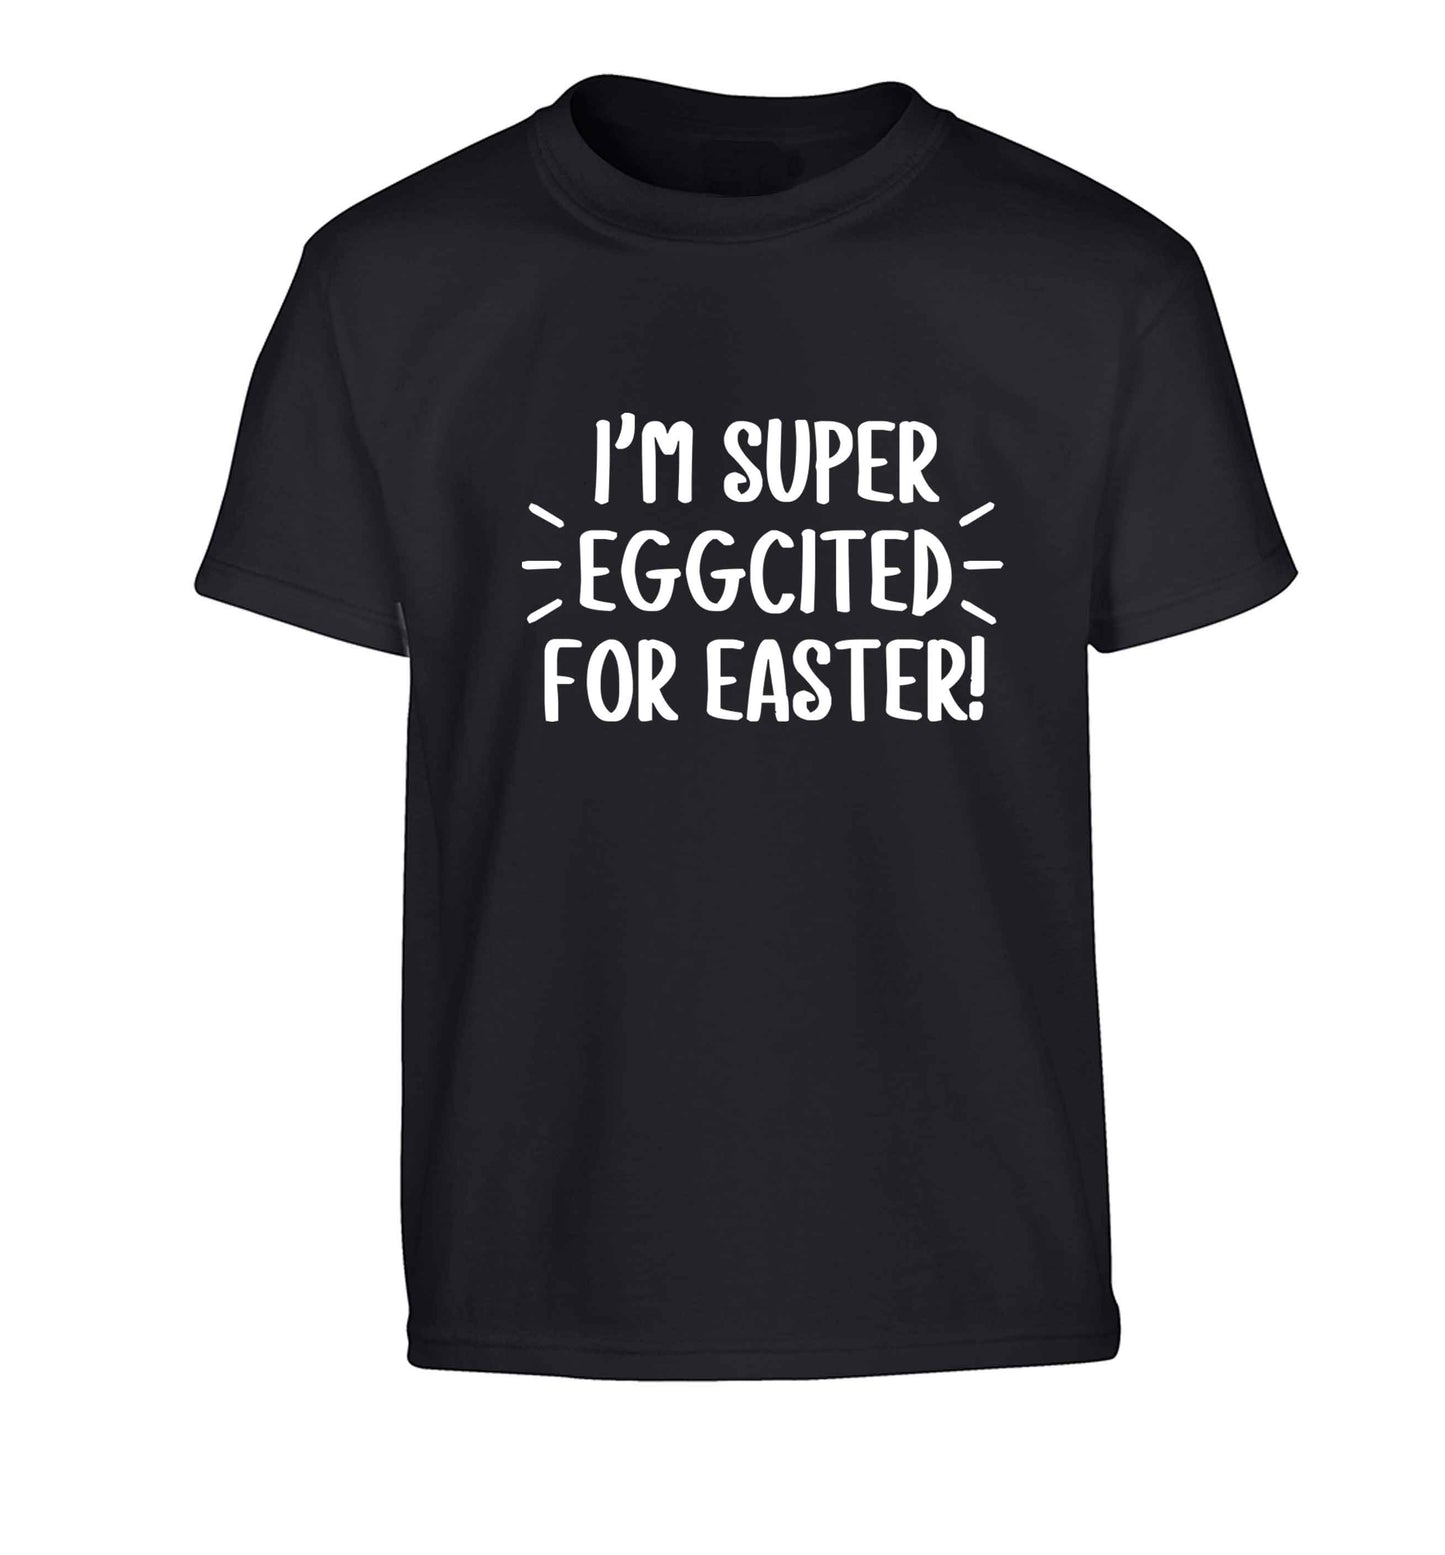 I'm super eggcited for Easter Children's black Tshirt 12-13 Years